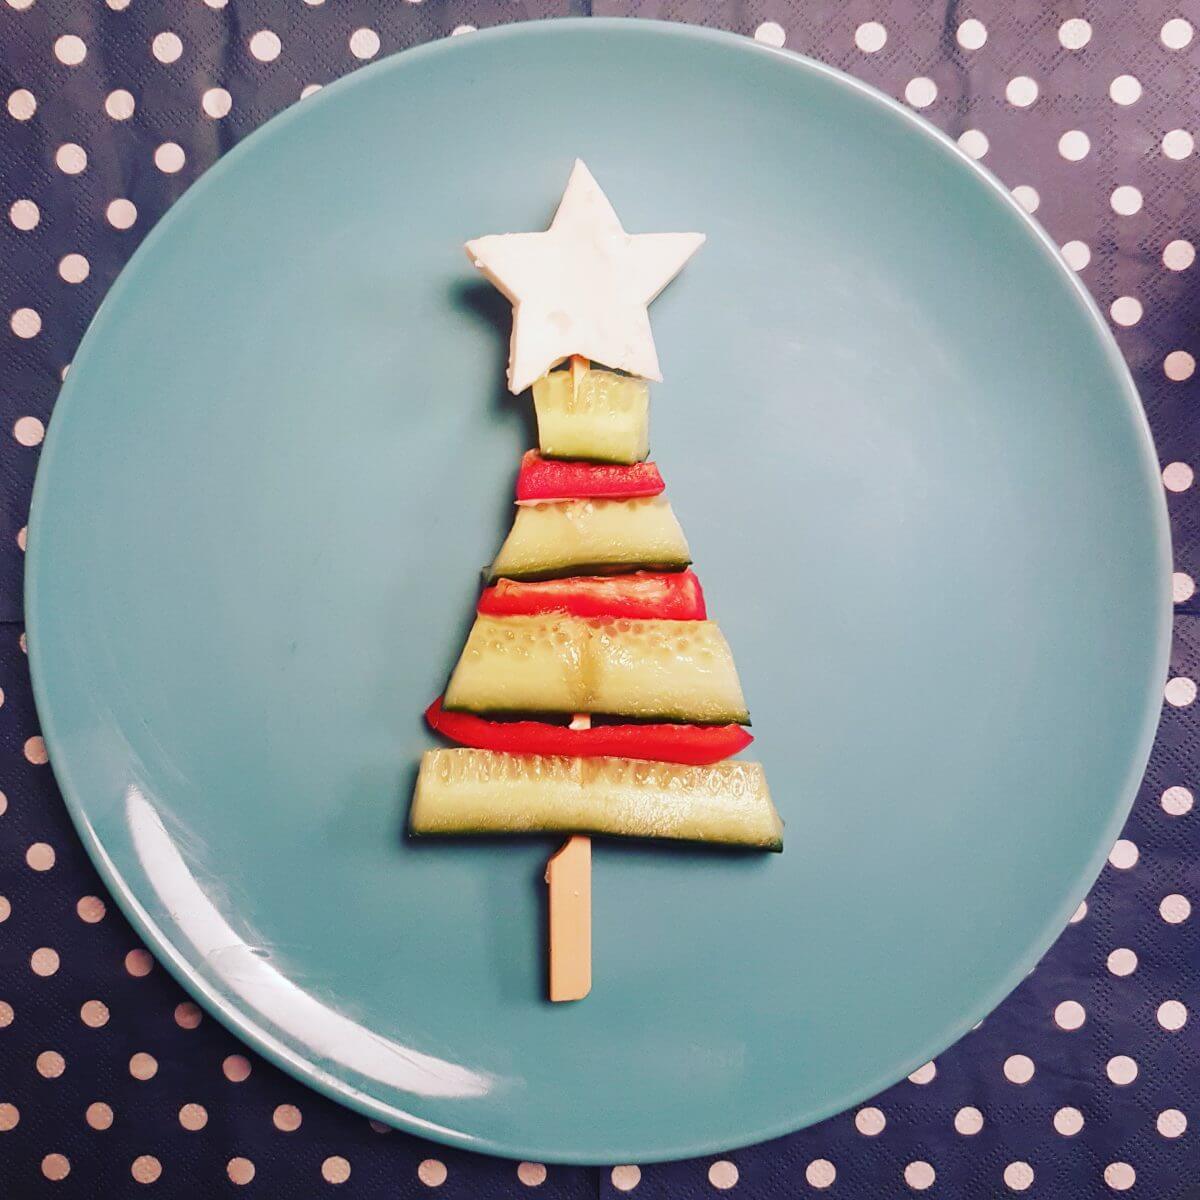 De leukste kindvriendelijke recepten voor kerstdiner en kerstontbijt - op school en thuis - groentenprikker in de vorm van een kerstboom